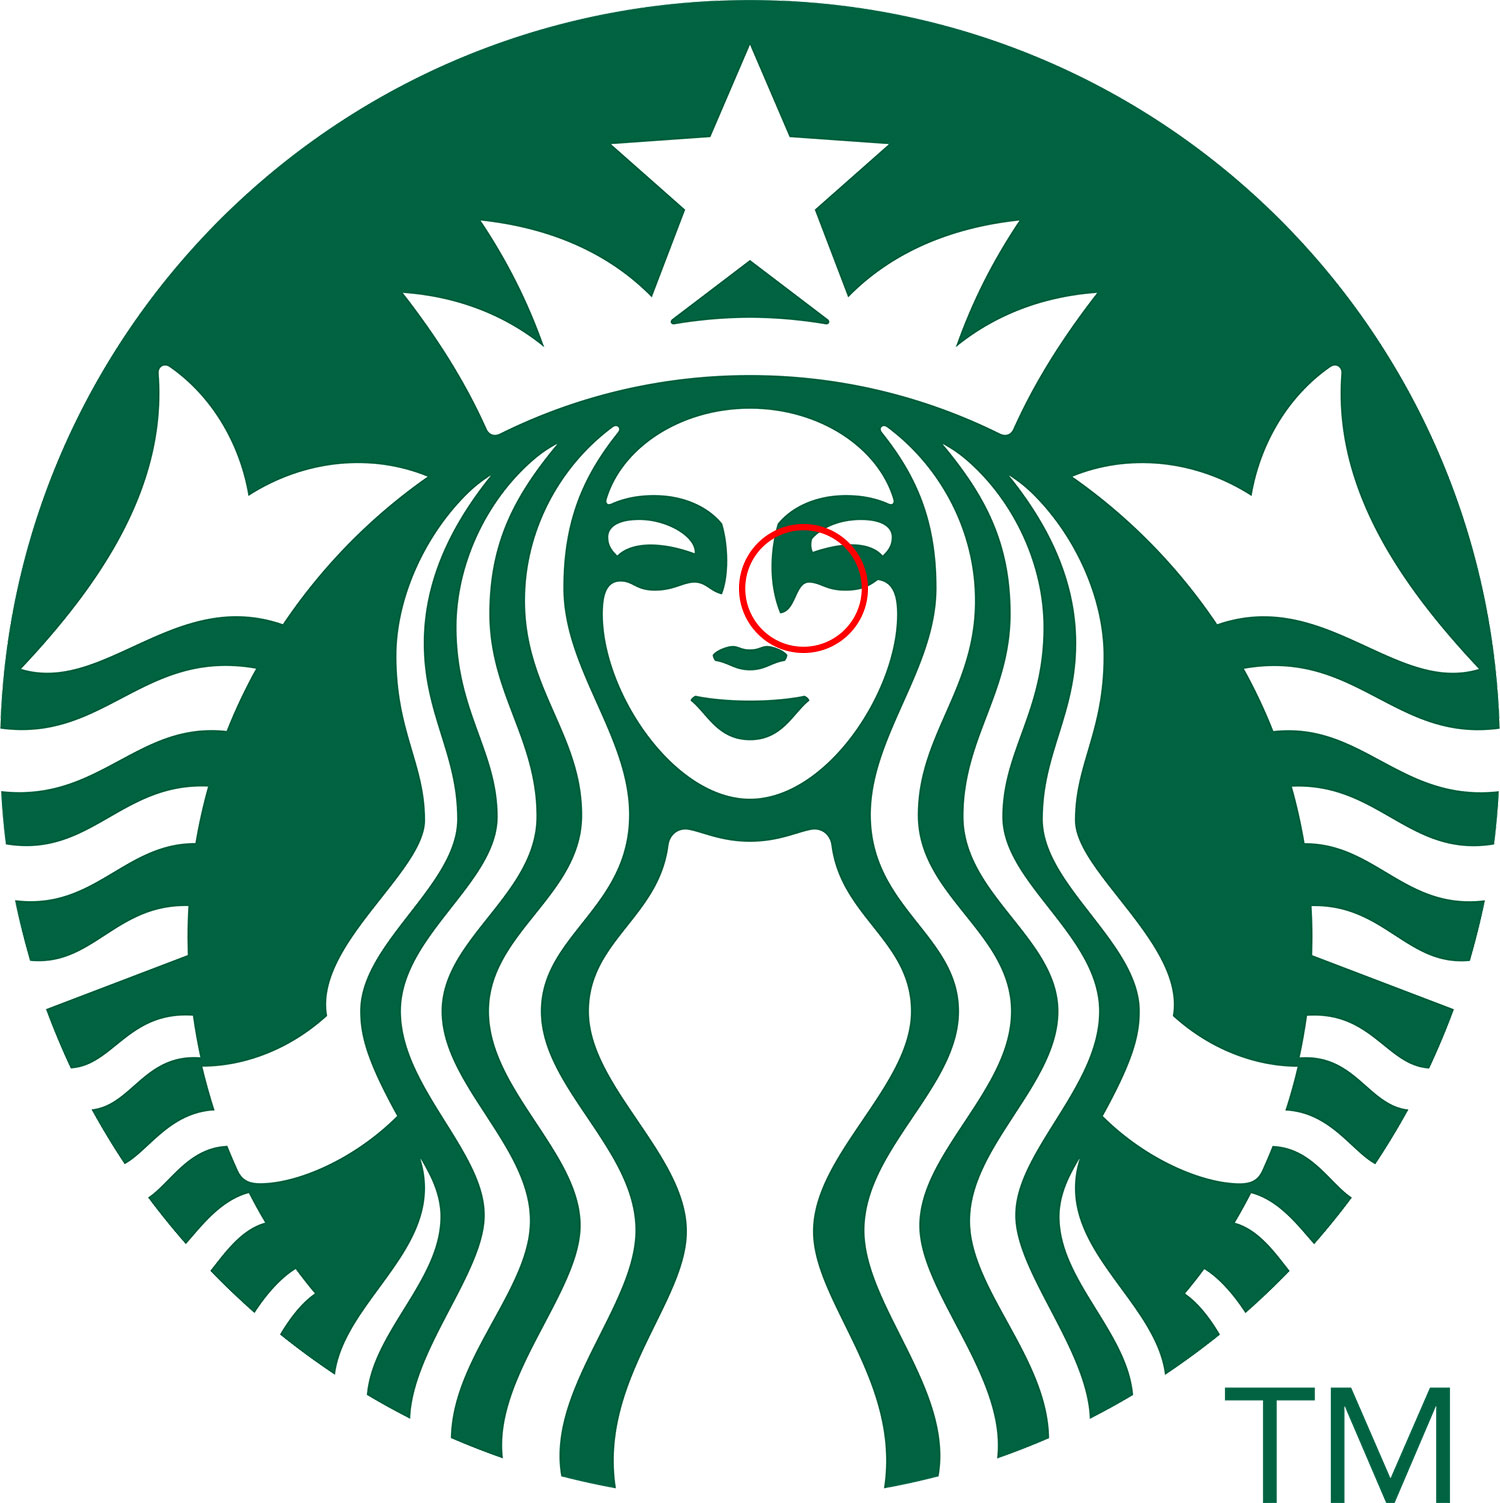 스타벅스 로고의 비대칭 포인트